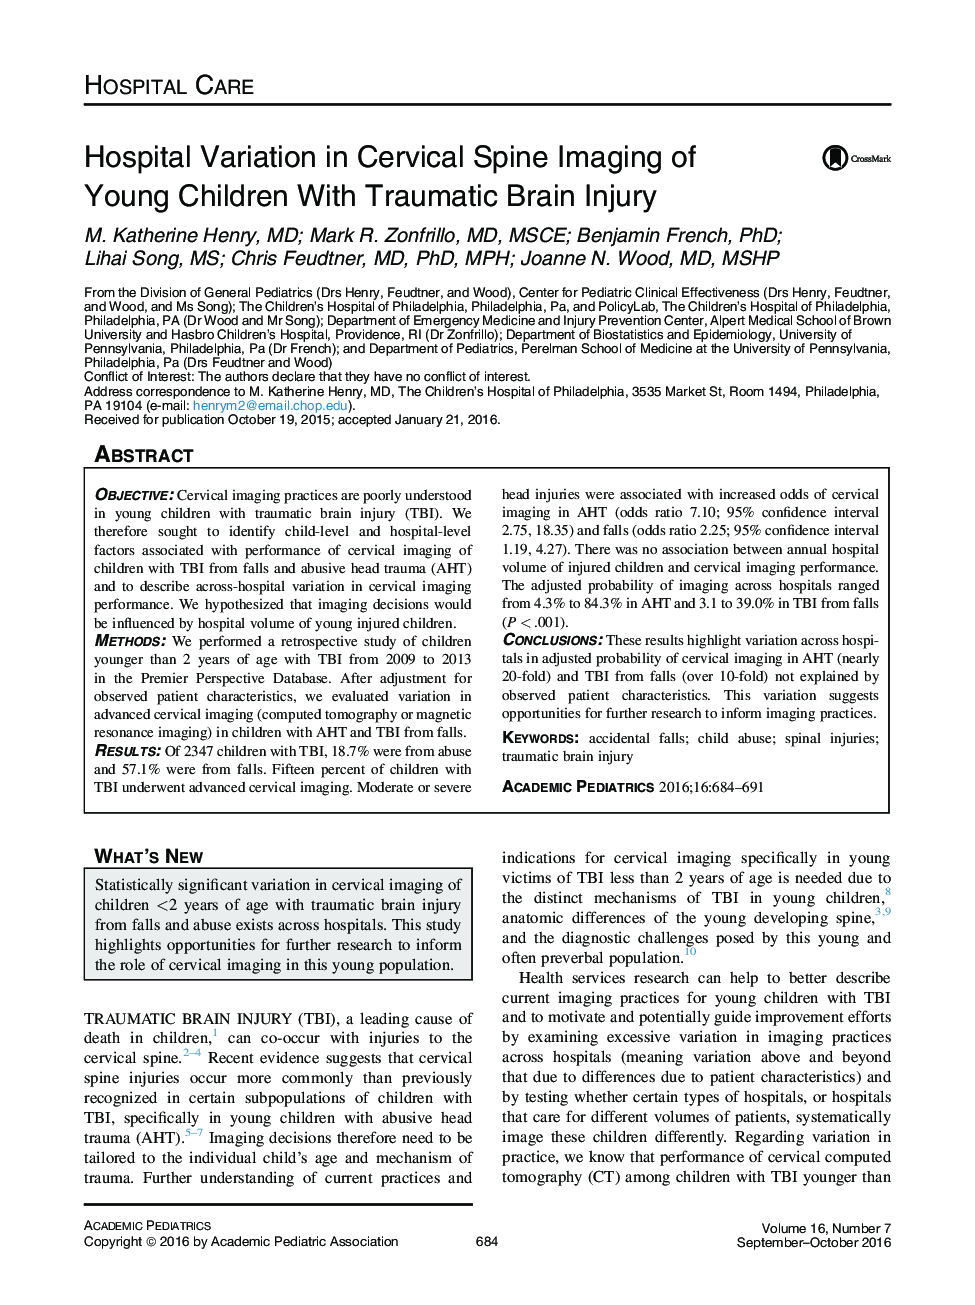 تفاوت های بیمارستانی در تصویربرداری از ستون فقرات گردنی کودکان جوان با ضربه مغزی